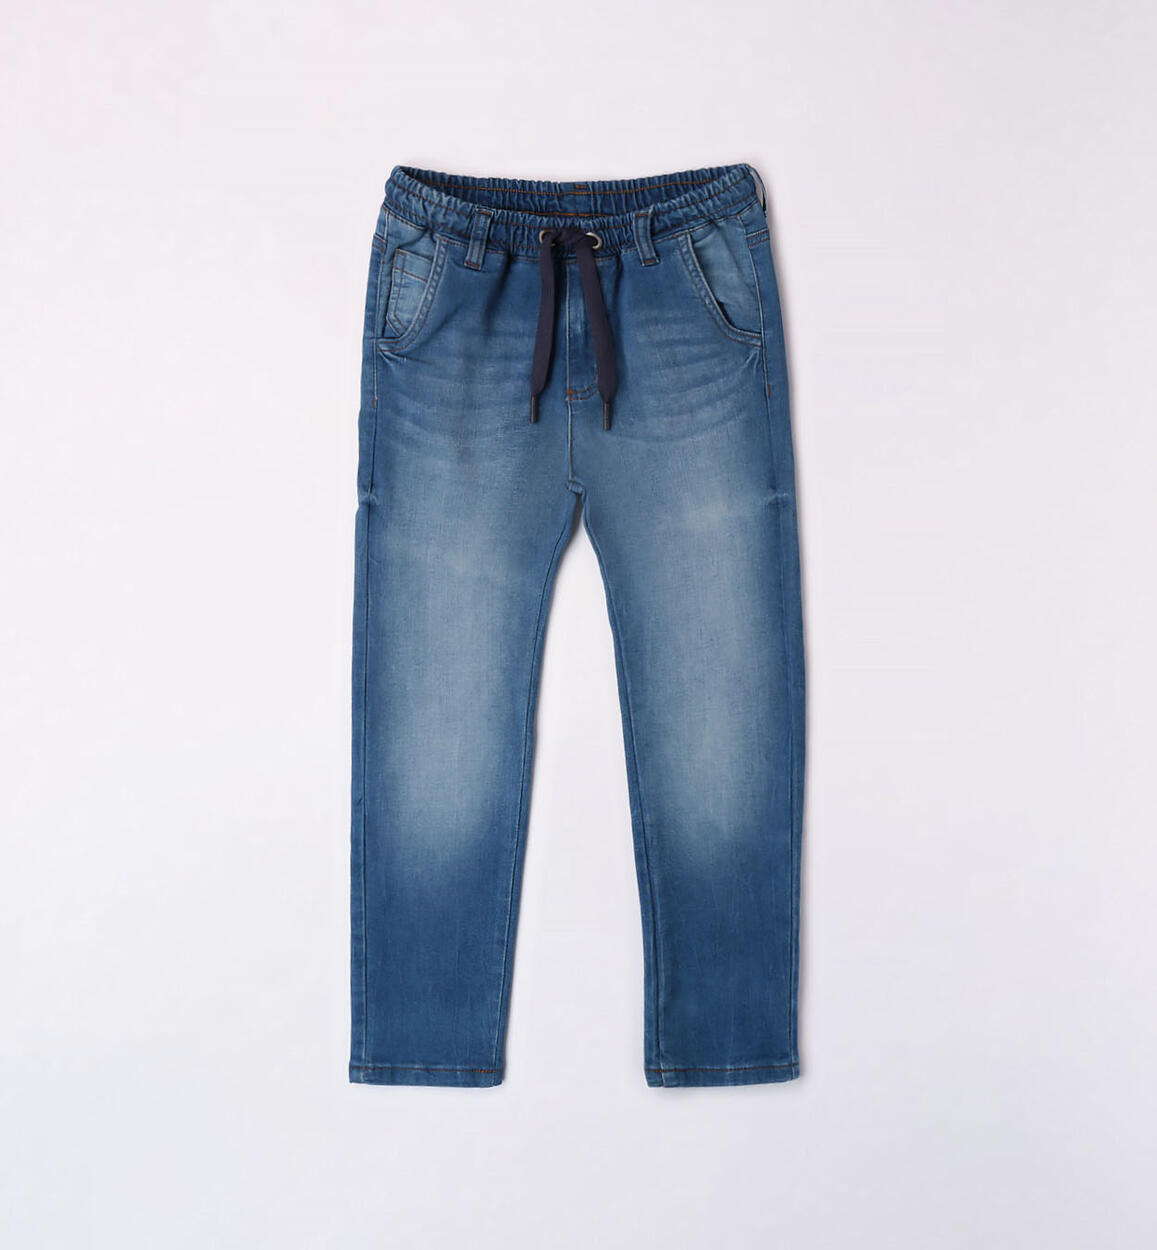 Pantalone , Jeans con elastico per ragazzo da 8 a 16 anni Sarabanda 07444 - BabyBimbo 0-16, abbigliamento bambini